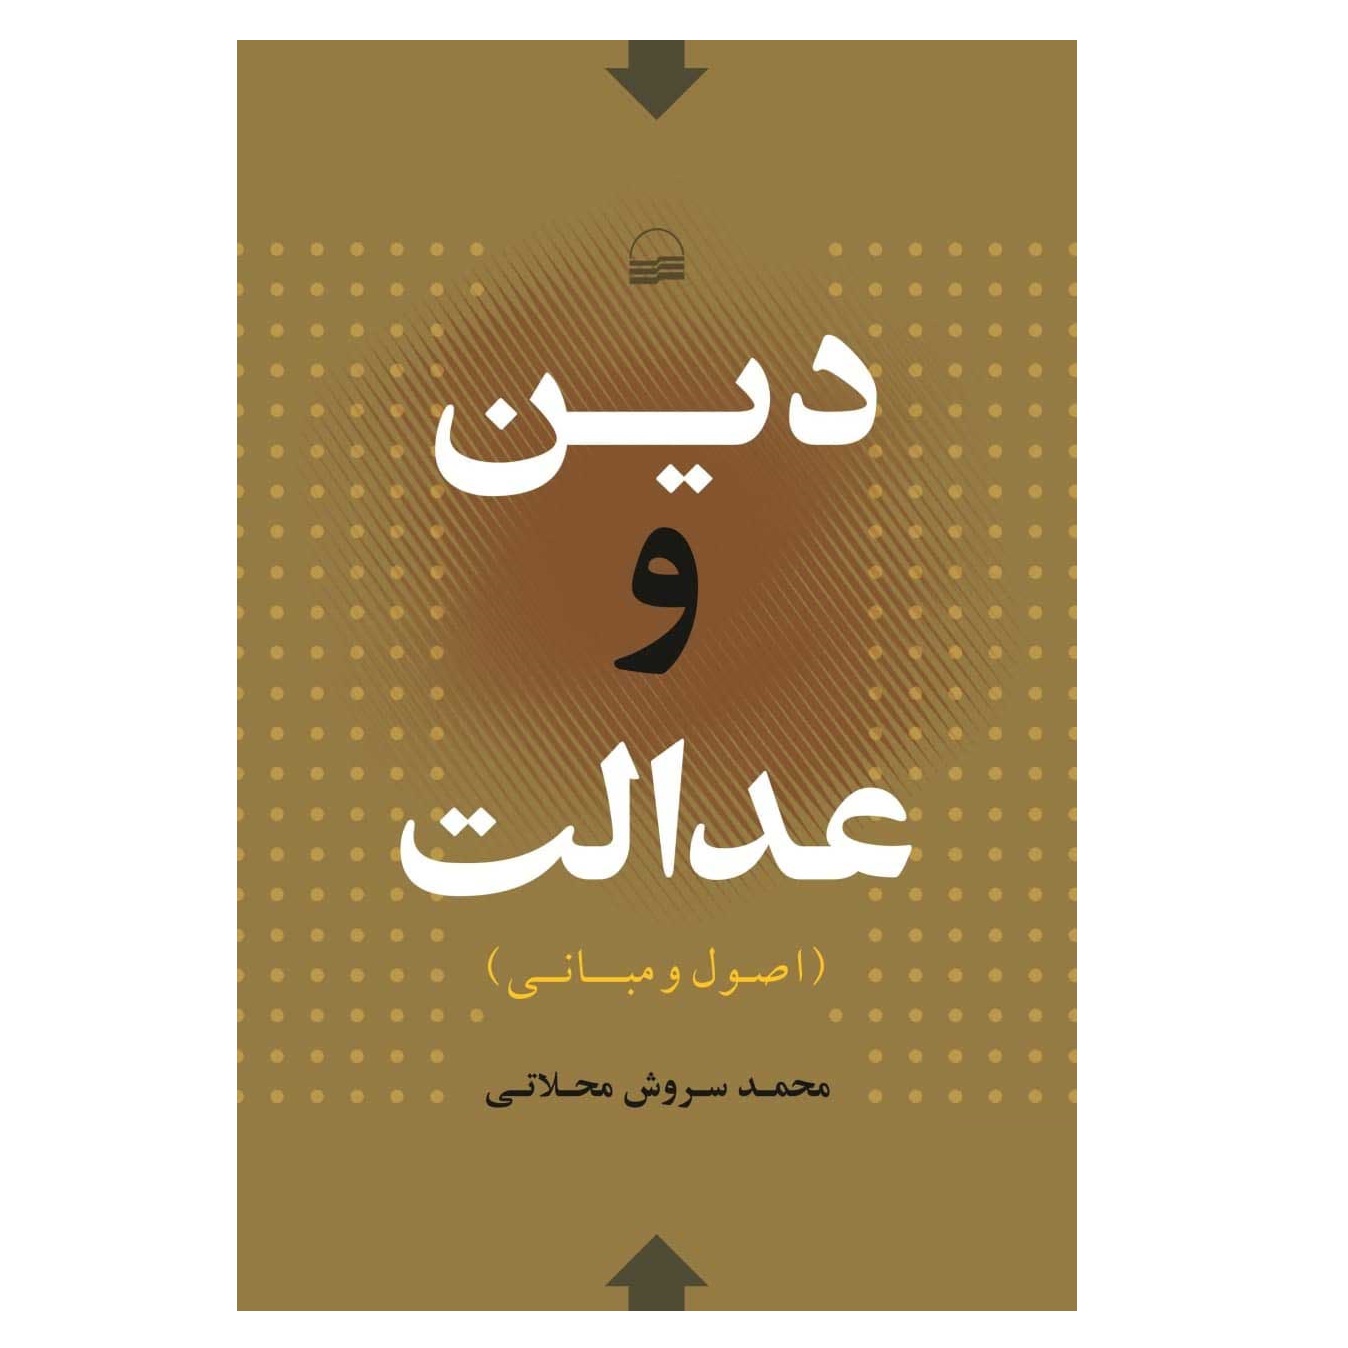 كتاب دين و عدالت اثر محمد سروش محلاتي انتشارات كوير